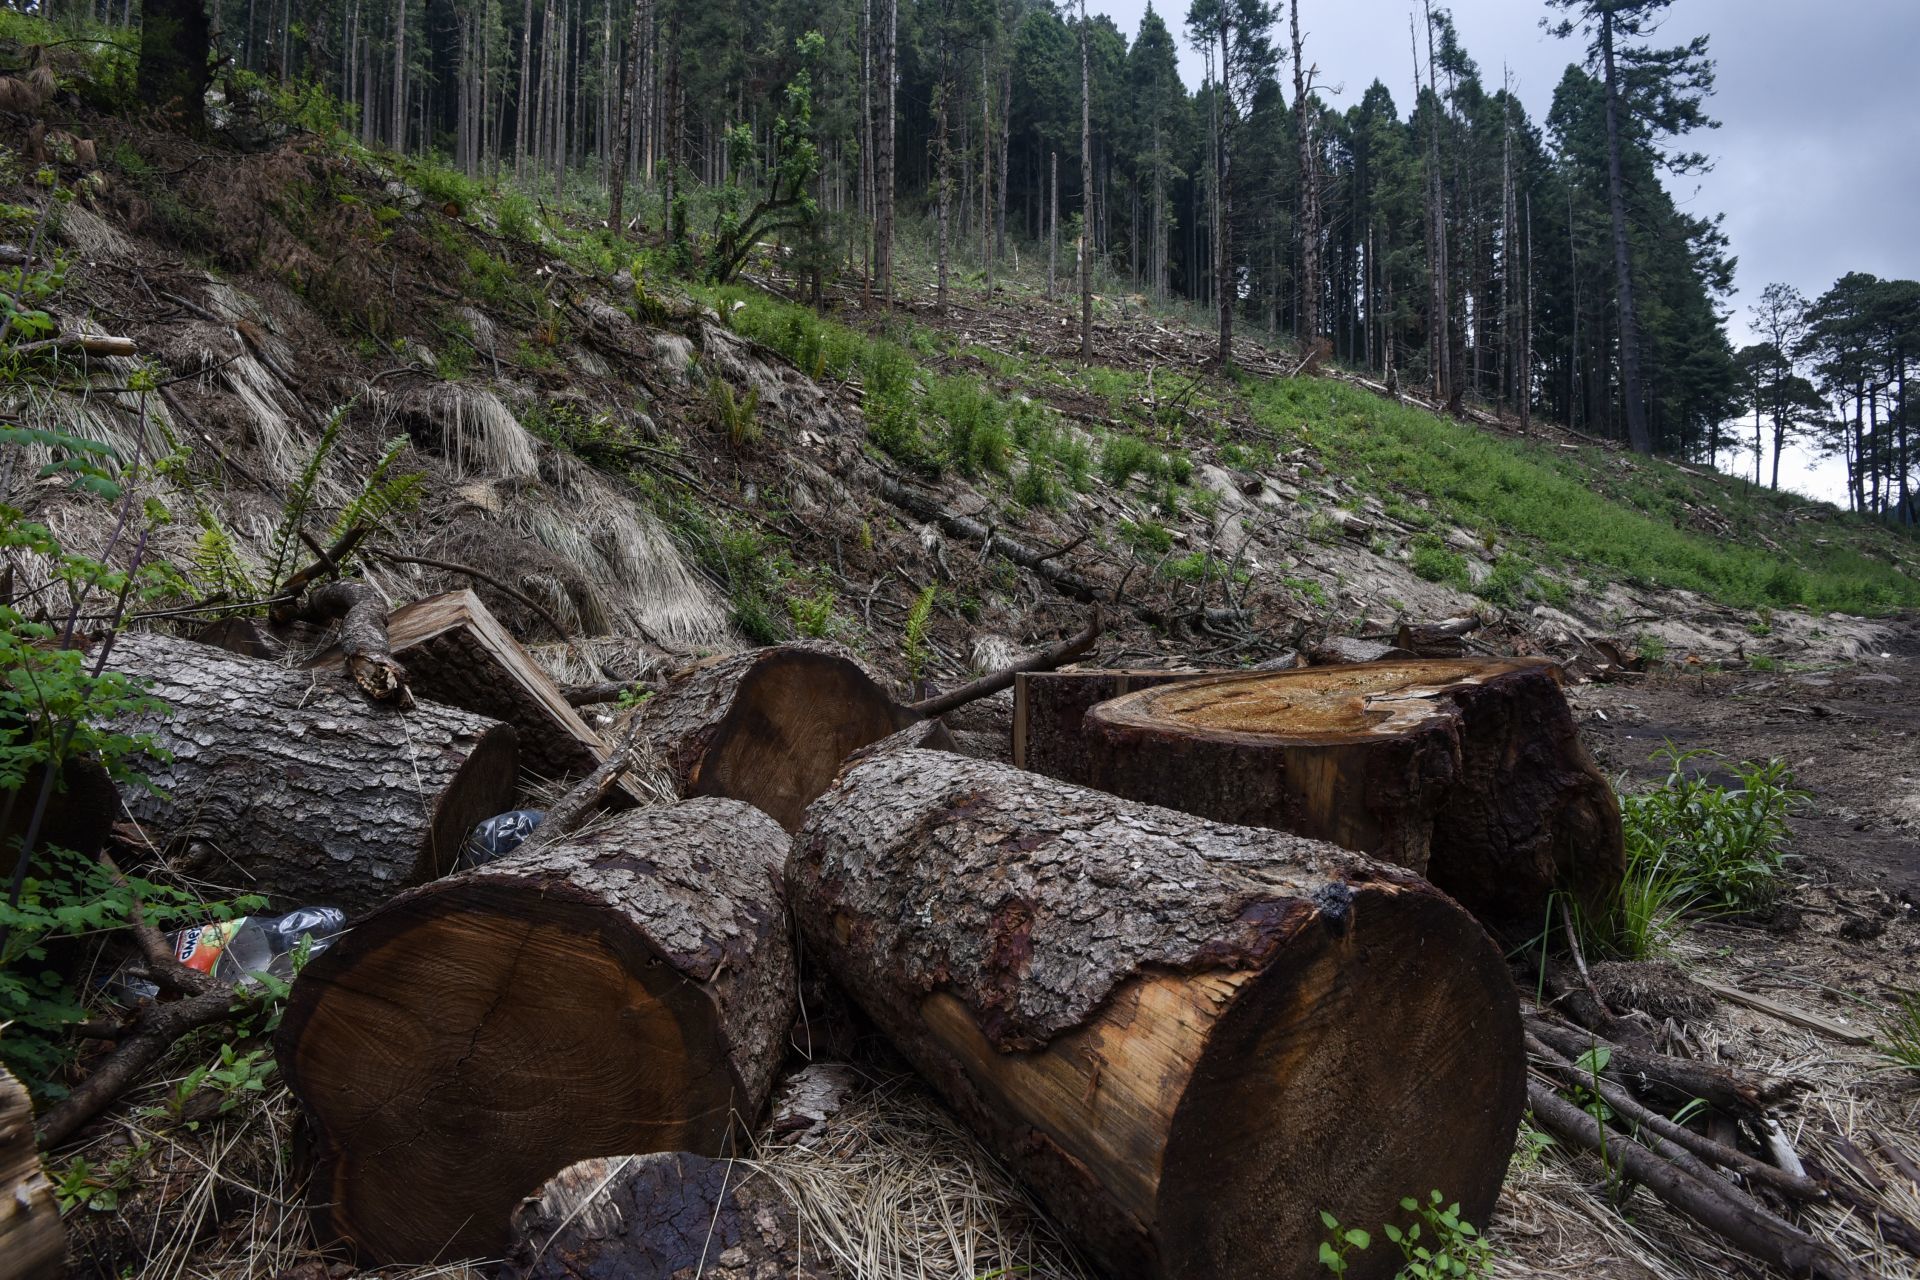 Profepa deberá informar sobre la tala ilegal en bosques de la CDMX por instrucción del INAI